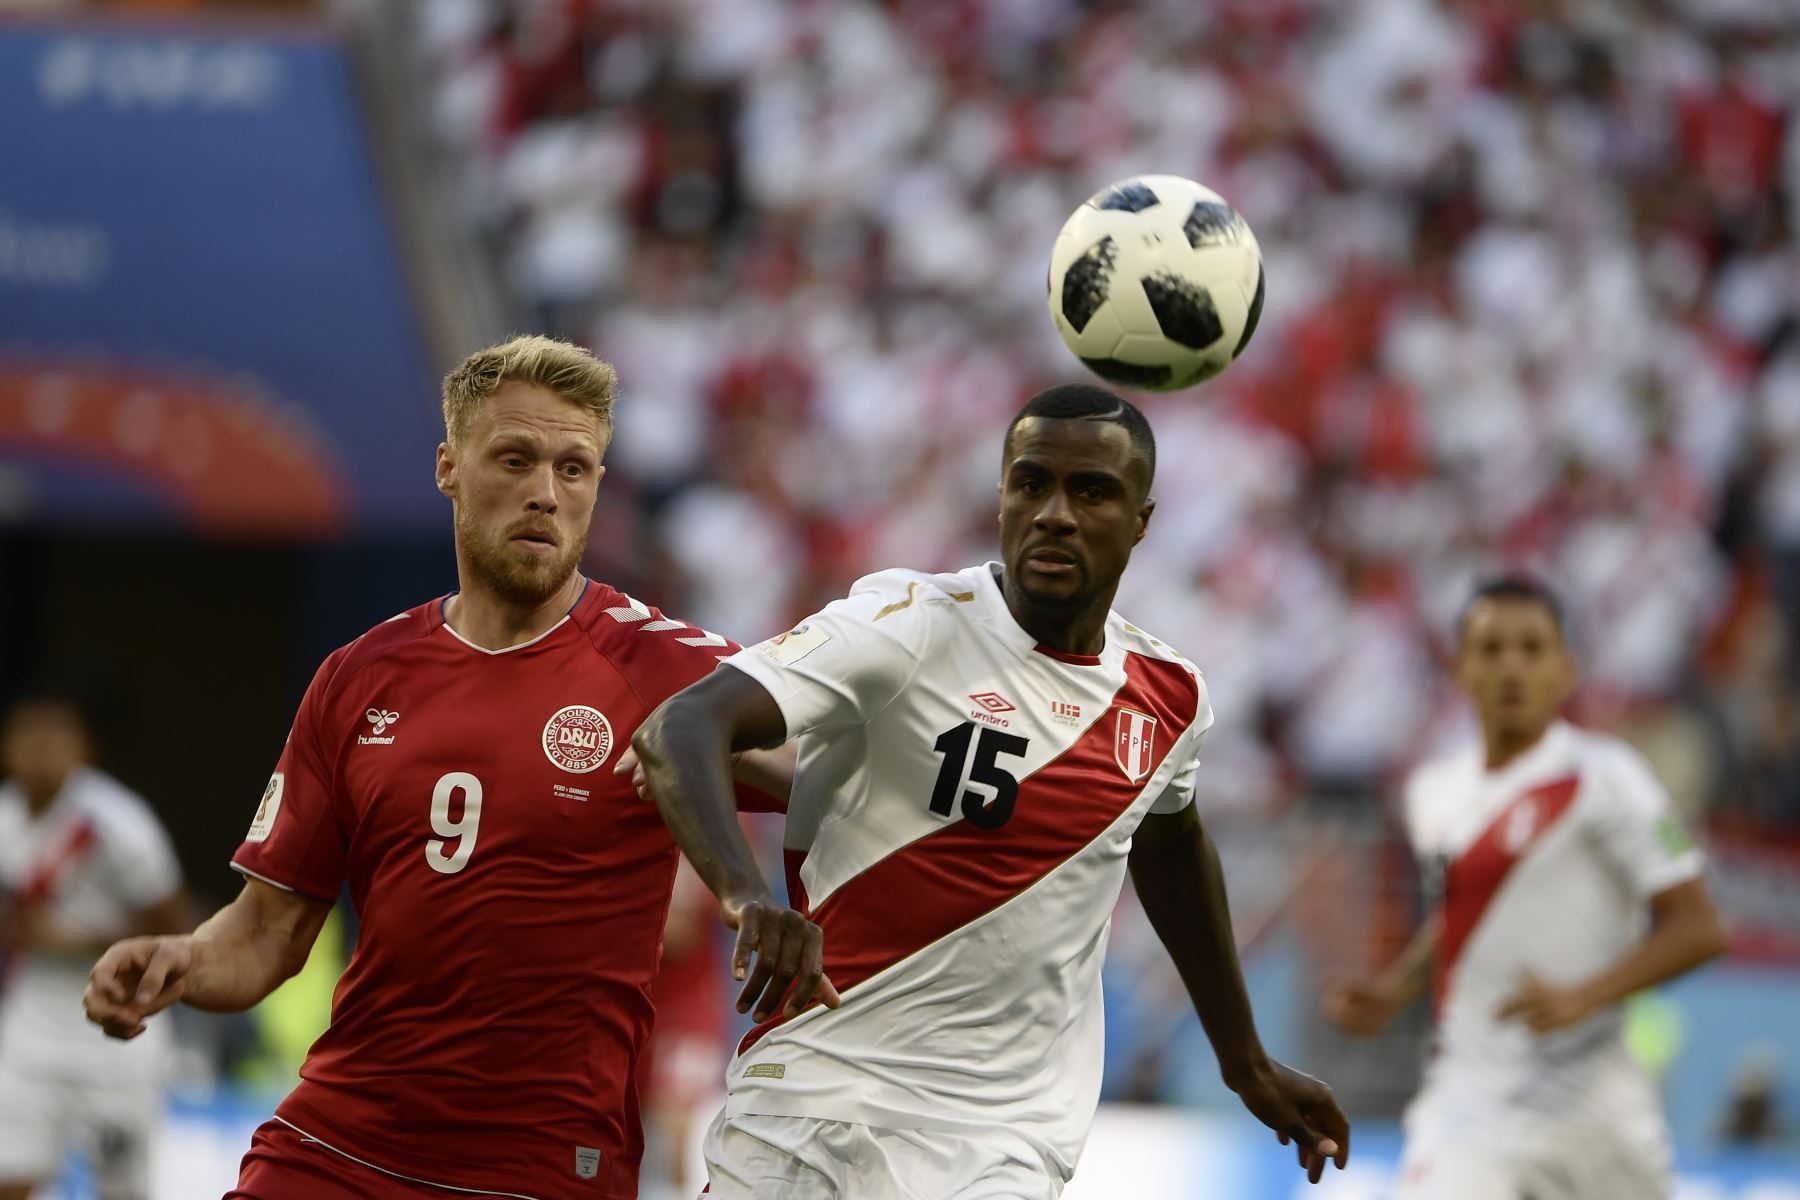 El delantero danés Nicolai Jorgensen (L) compite por el balón con el defensa peruano Christian Ramos durante el partido de fútbol del Grupo C de la Copa Rusia 2018 entre Perú y Dinamarca en el Mordovia Arena en Saransk el 16 de junio de 2018. / AFP